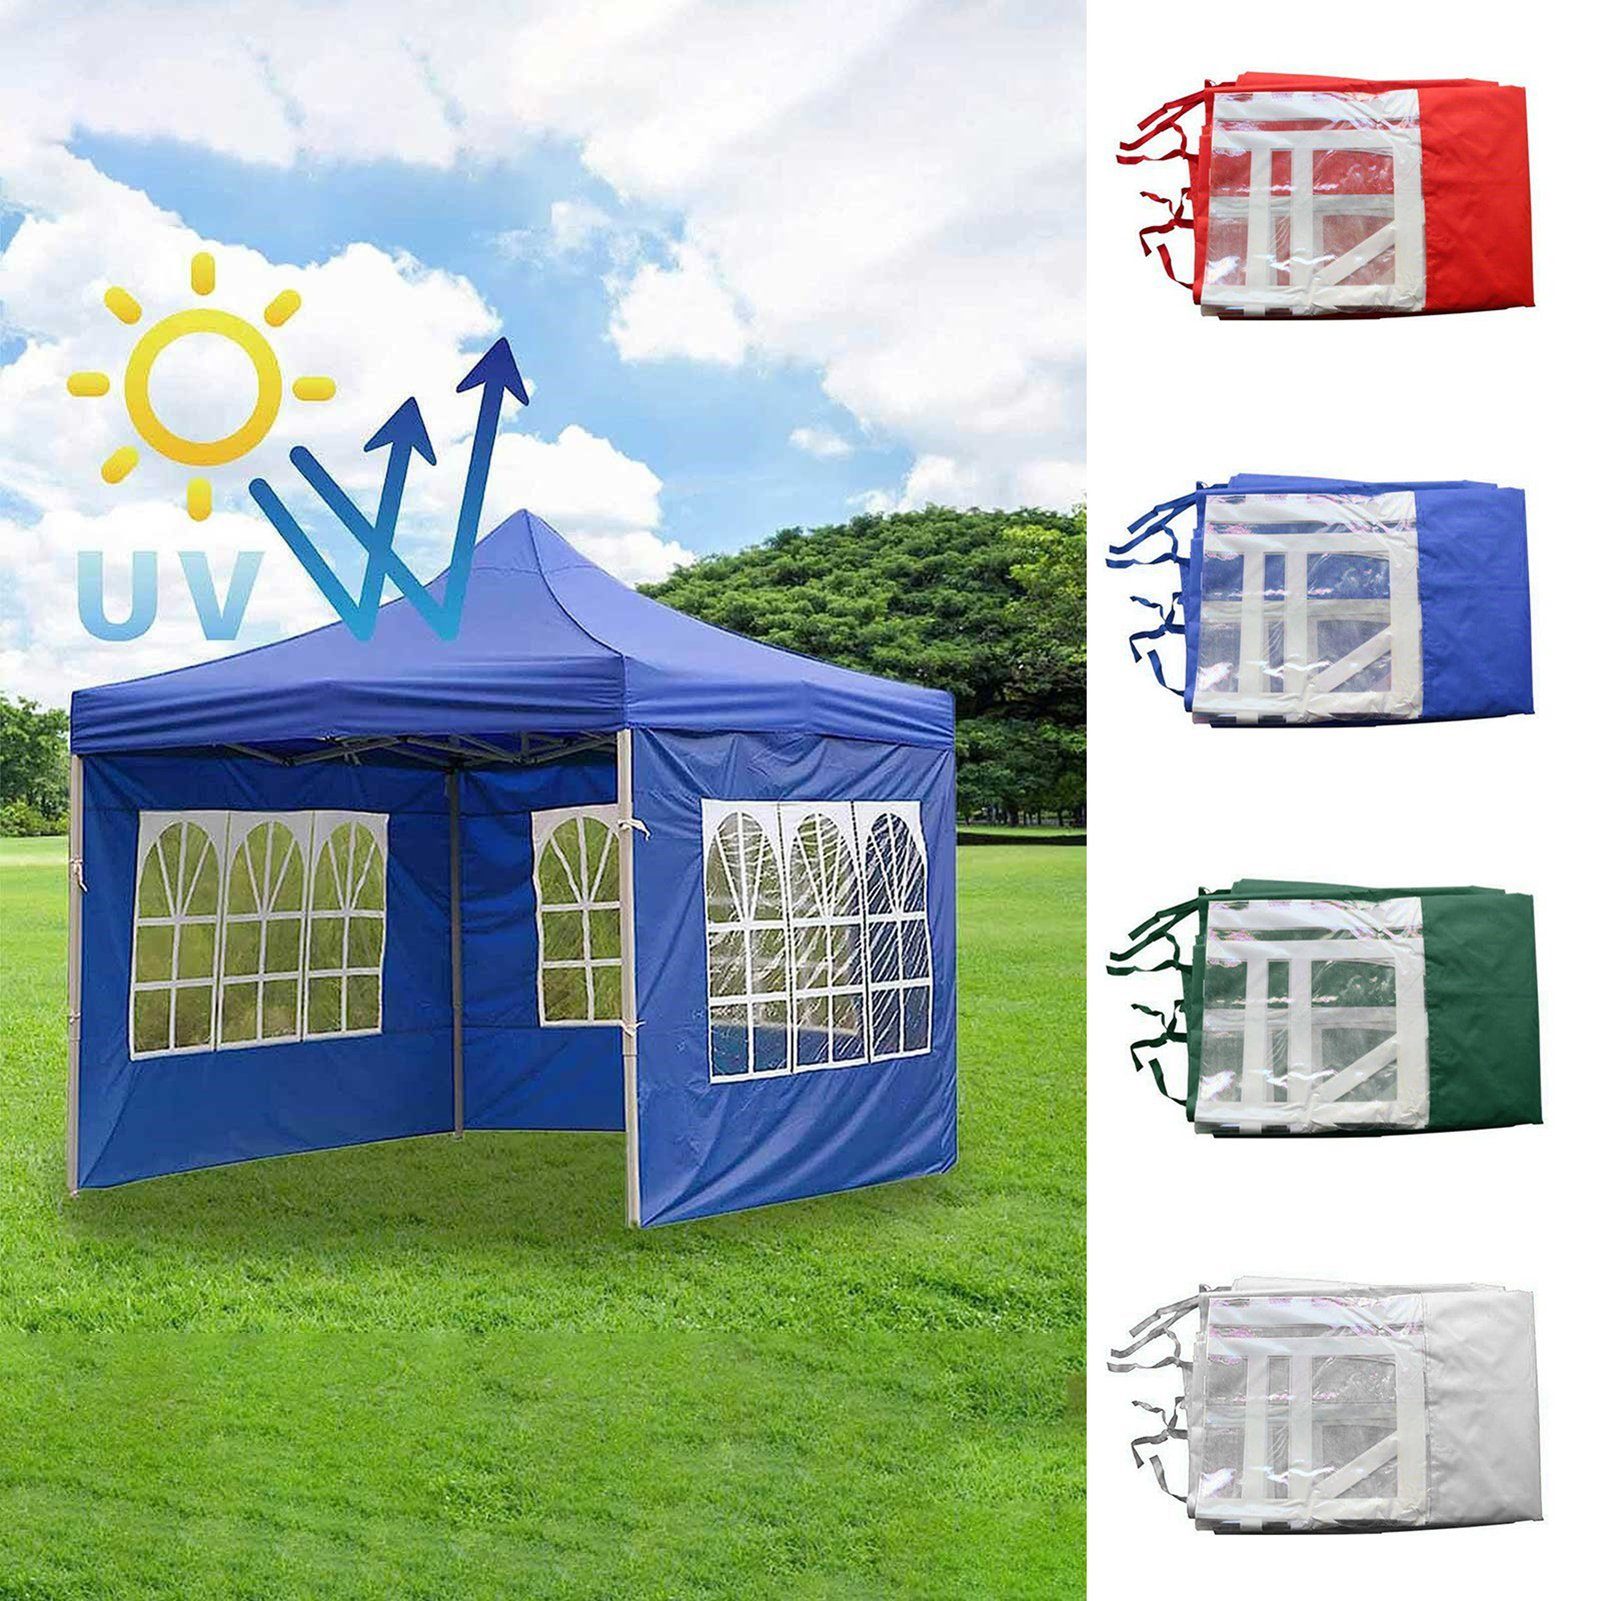 Rutaqian Tarp-Zelt Zelttuch Faltbar Wasserdicht Hat 3 Seiten und transparente Fenster, (Multifunktionaler Camping-Sonnenschutz aus Oxford-Stoff, Wind- und regensicheres Wickeltuch für Außenstallzelte), für Festival, Party, Marktstand, Flohmarkt und Campen blau